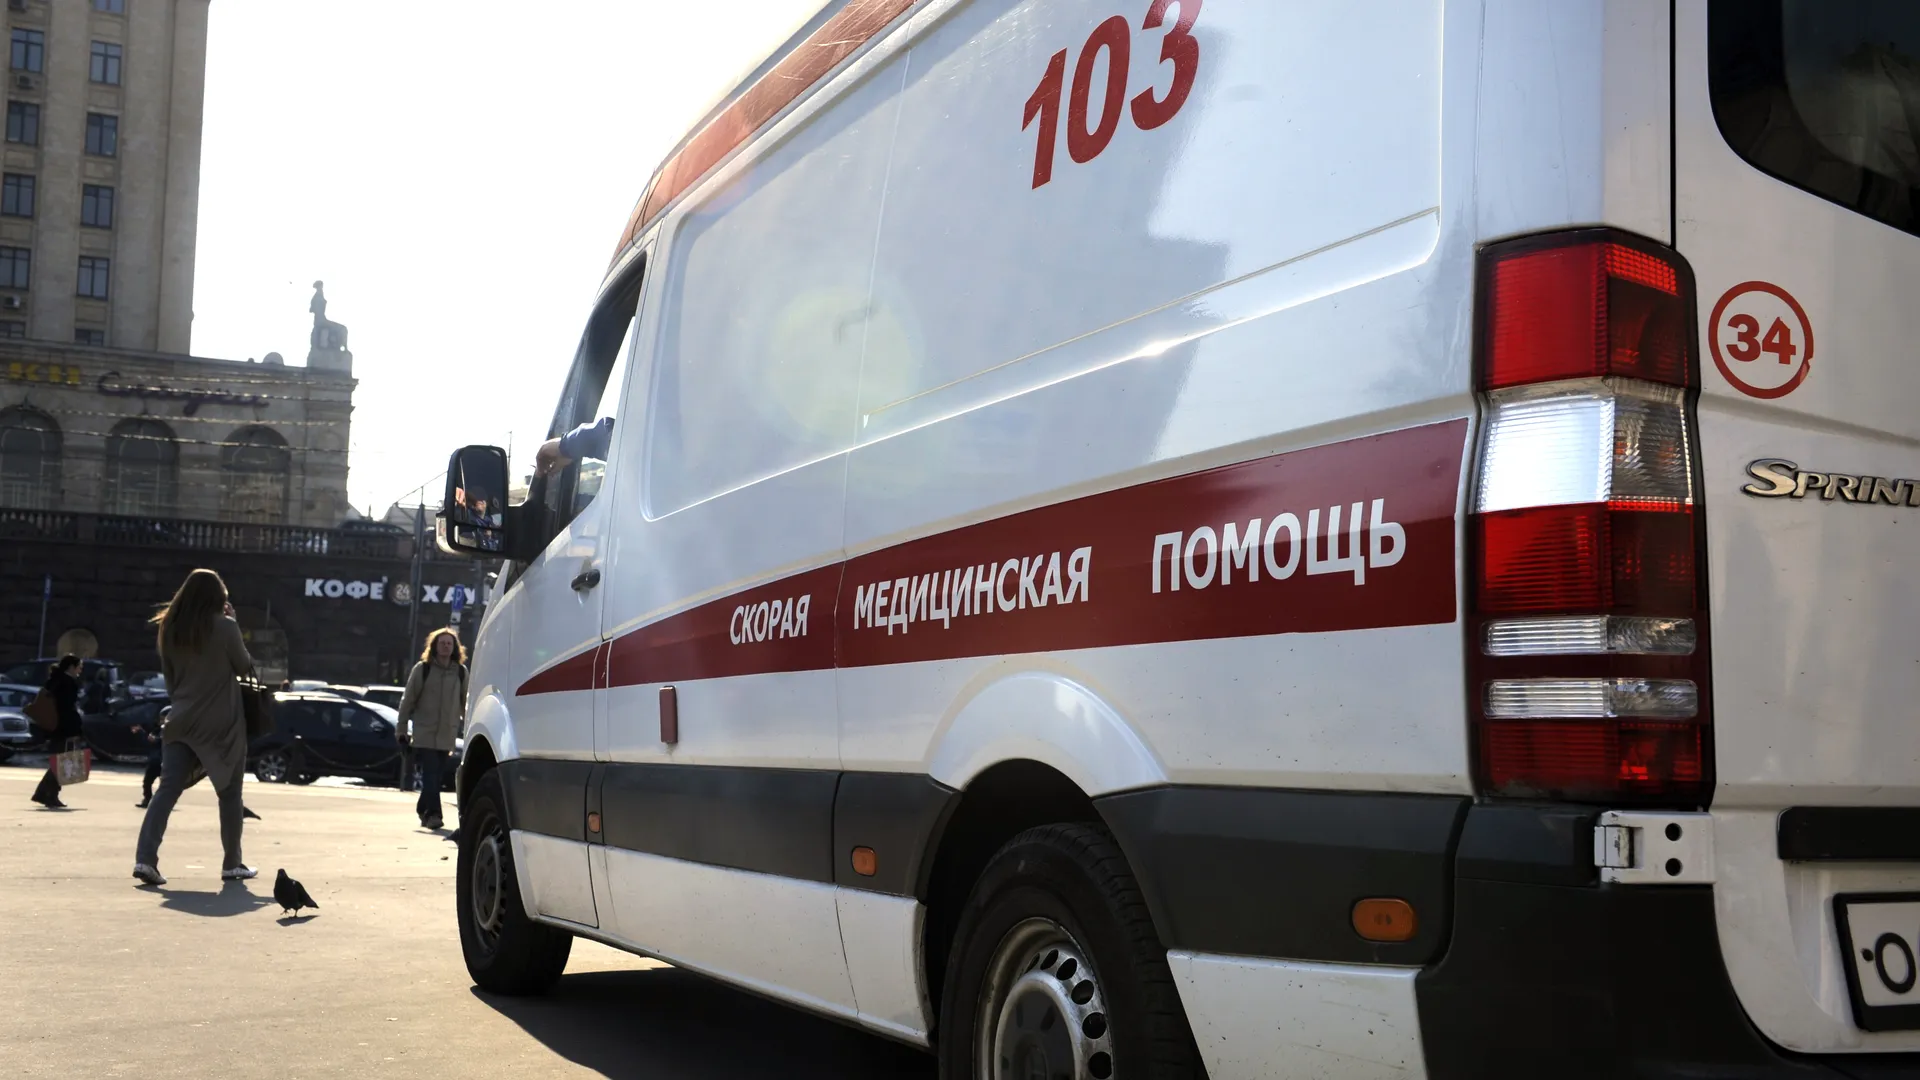 Петербурженка рассказала об обстановке после взрыва в Военной академии